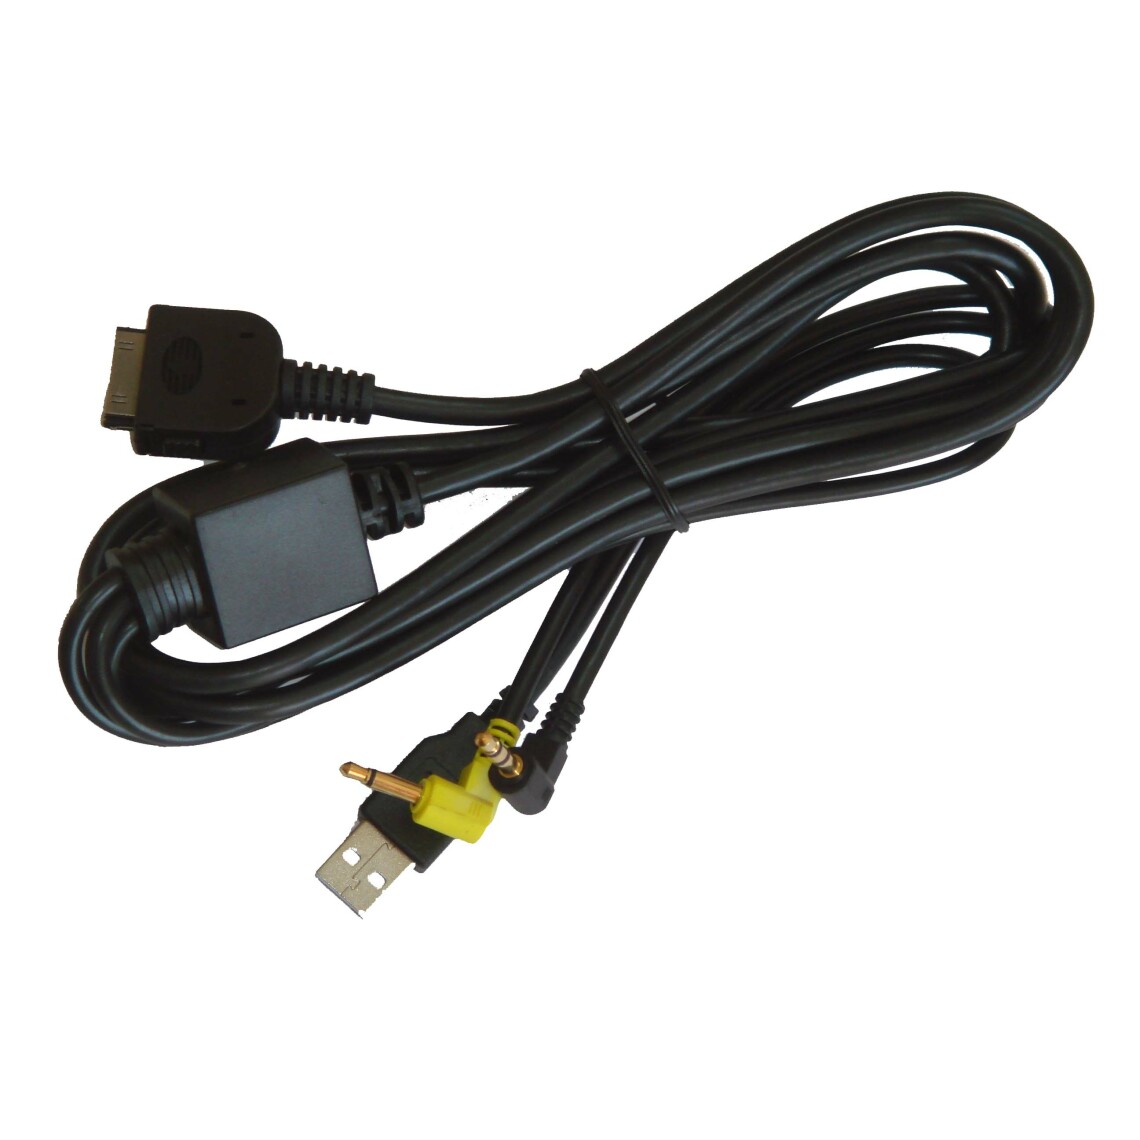 Vhbw - vhbw Câble adaptateur de ligne AUX Radio compatible avec Kenwood DDX7032M, DDX7034BT, DDX7034BTM, DDX7039, DDX7039M, DDX712 voiture - USB, prise jack - Alimentation modulaire